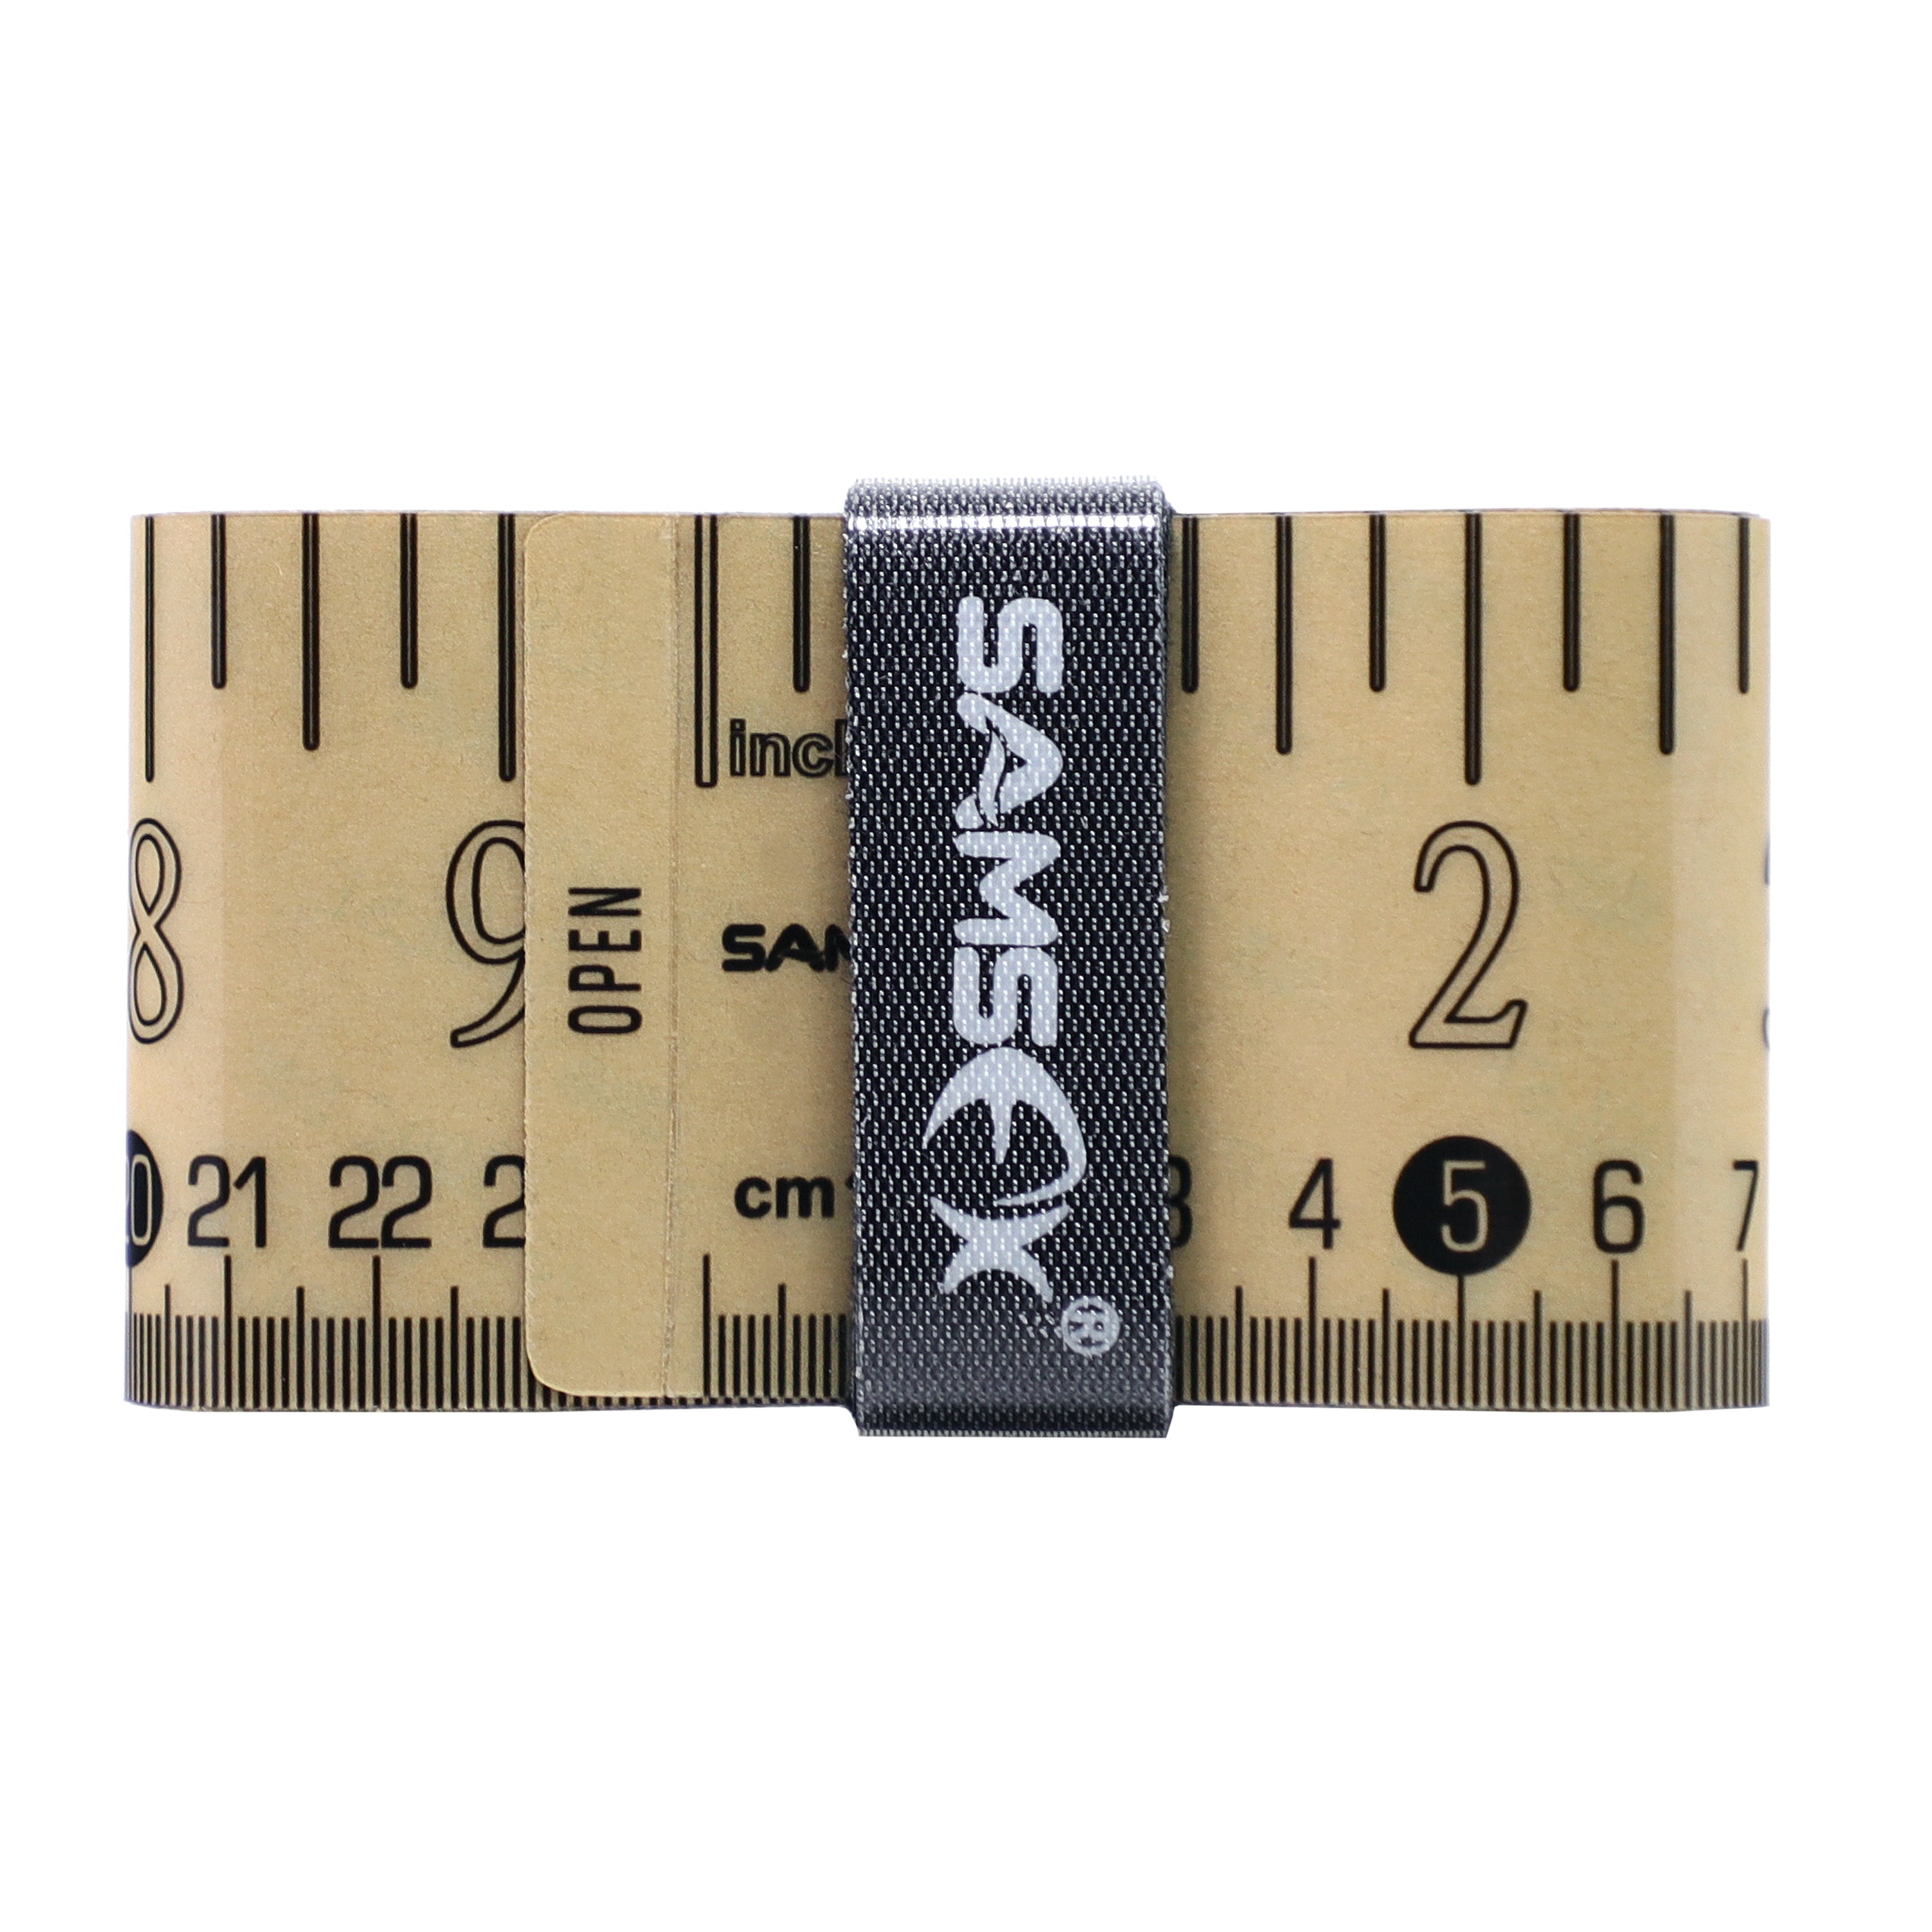 SAMSFX Fishing Self Adhesive Measuring Fish Ruler Tape Sticker Transparent